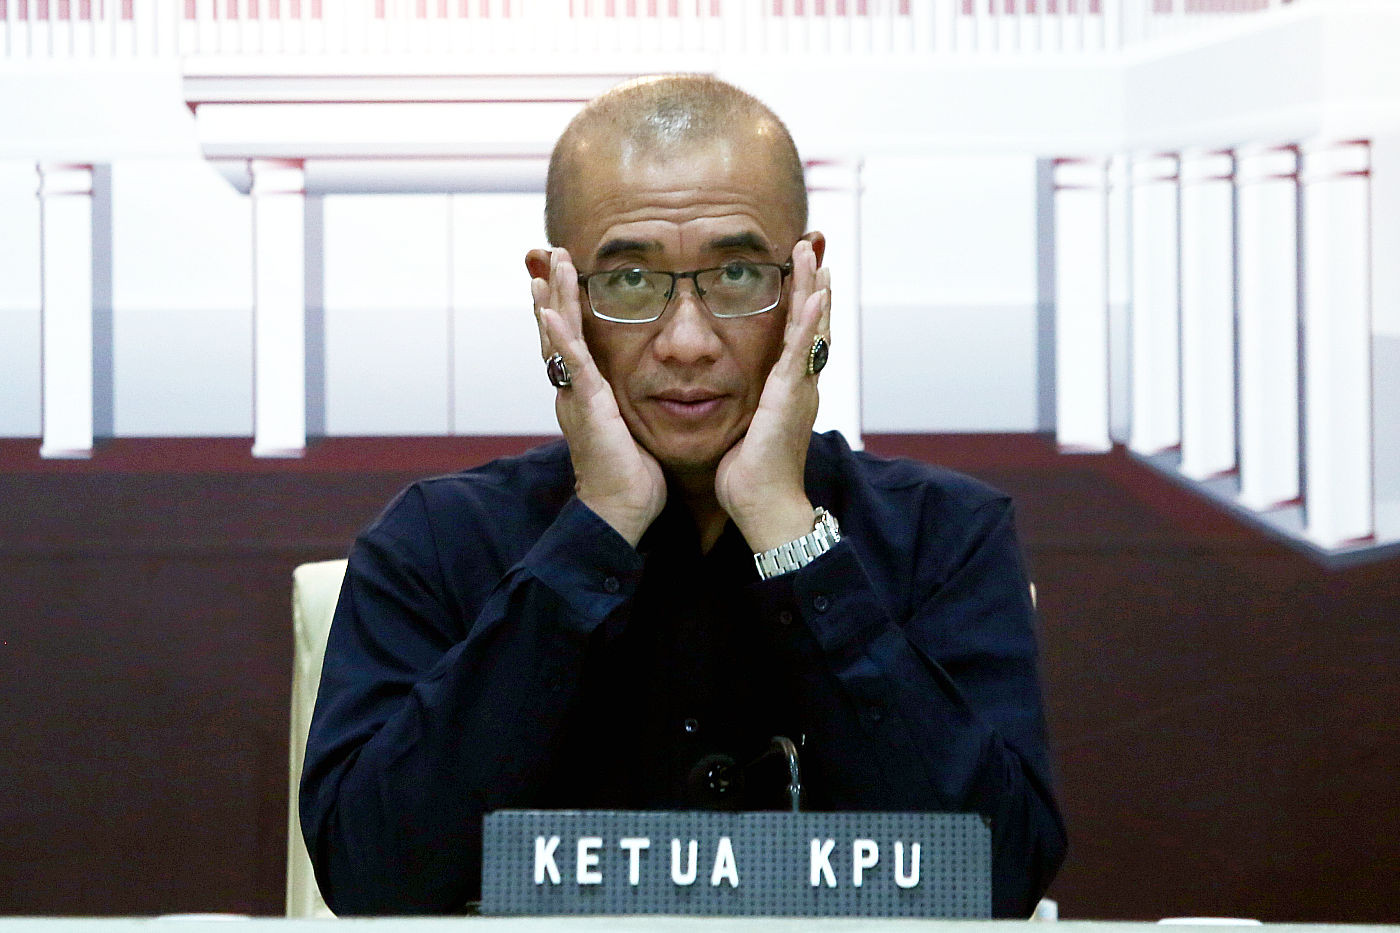 Keputusan DKPP Memecat Ketua KPU Patut Diapresiasi